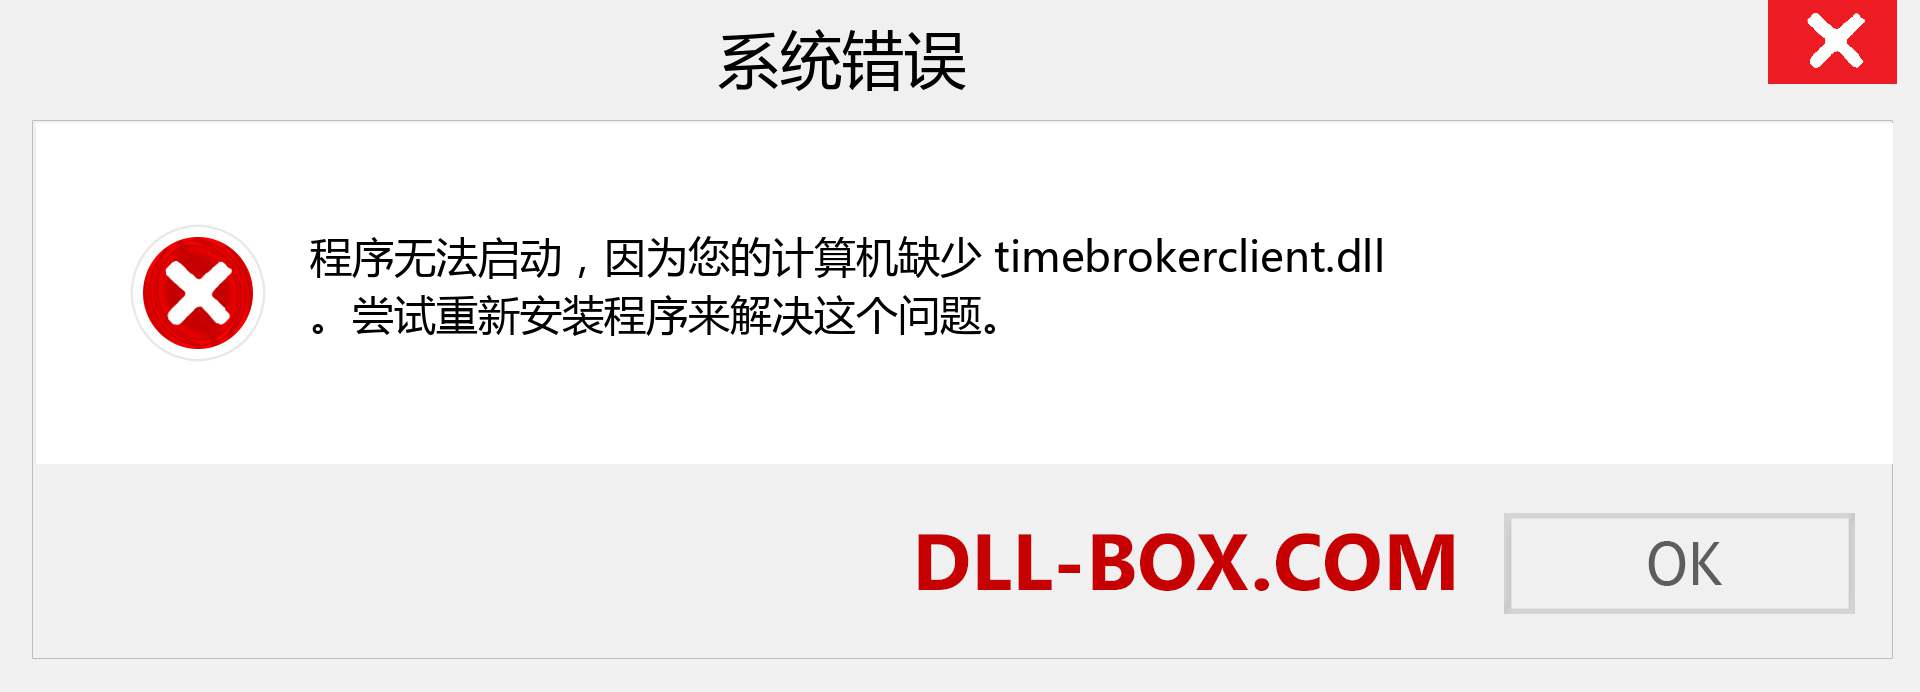 timebrokerclient.dll 文件丢失？。 适用于 Windows 7、8、10 的下载 - 修复 Windows、照片、图像上的 timebrokerclient dll 丢失错误